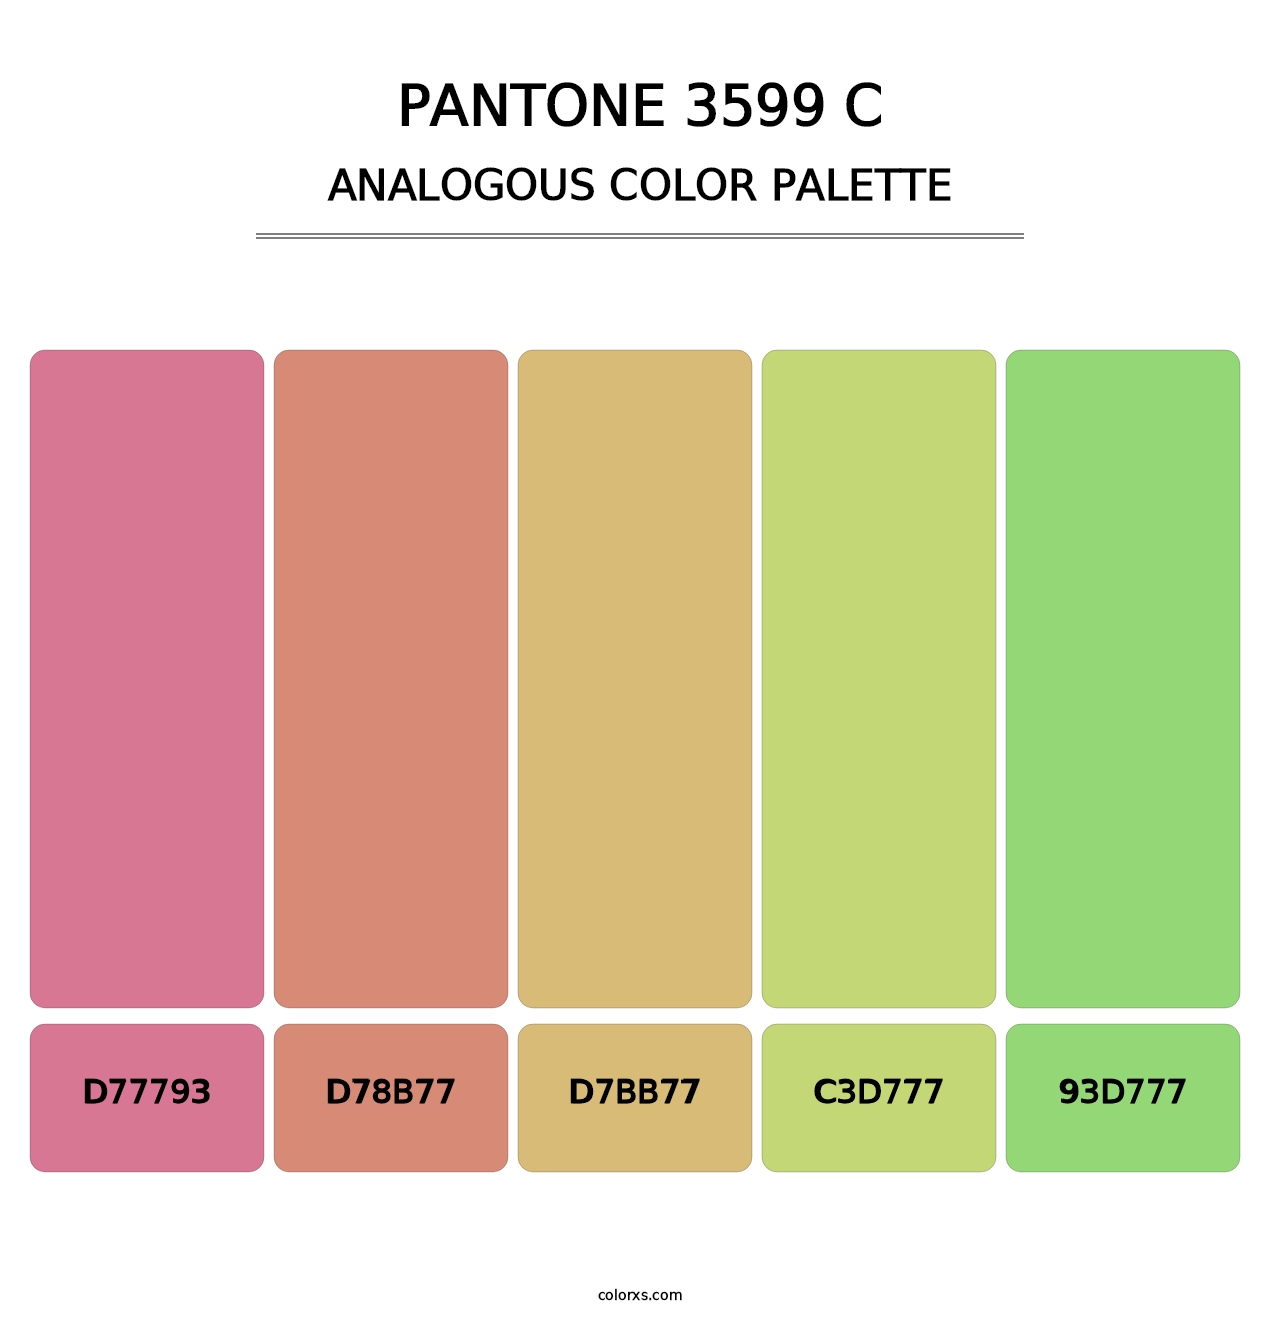 PANTONE 3599 C - Analogous Color Palette